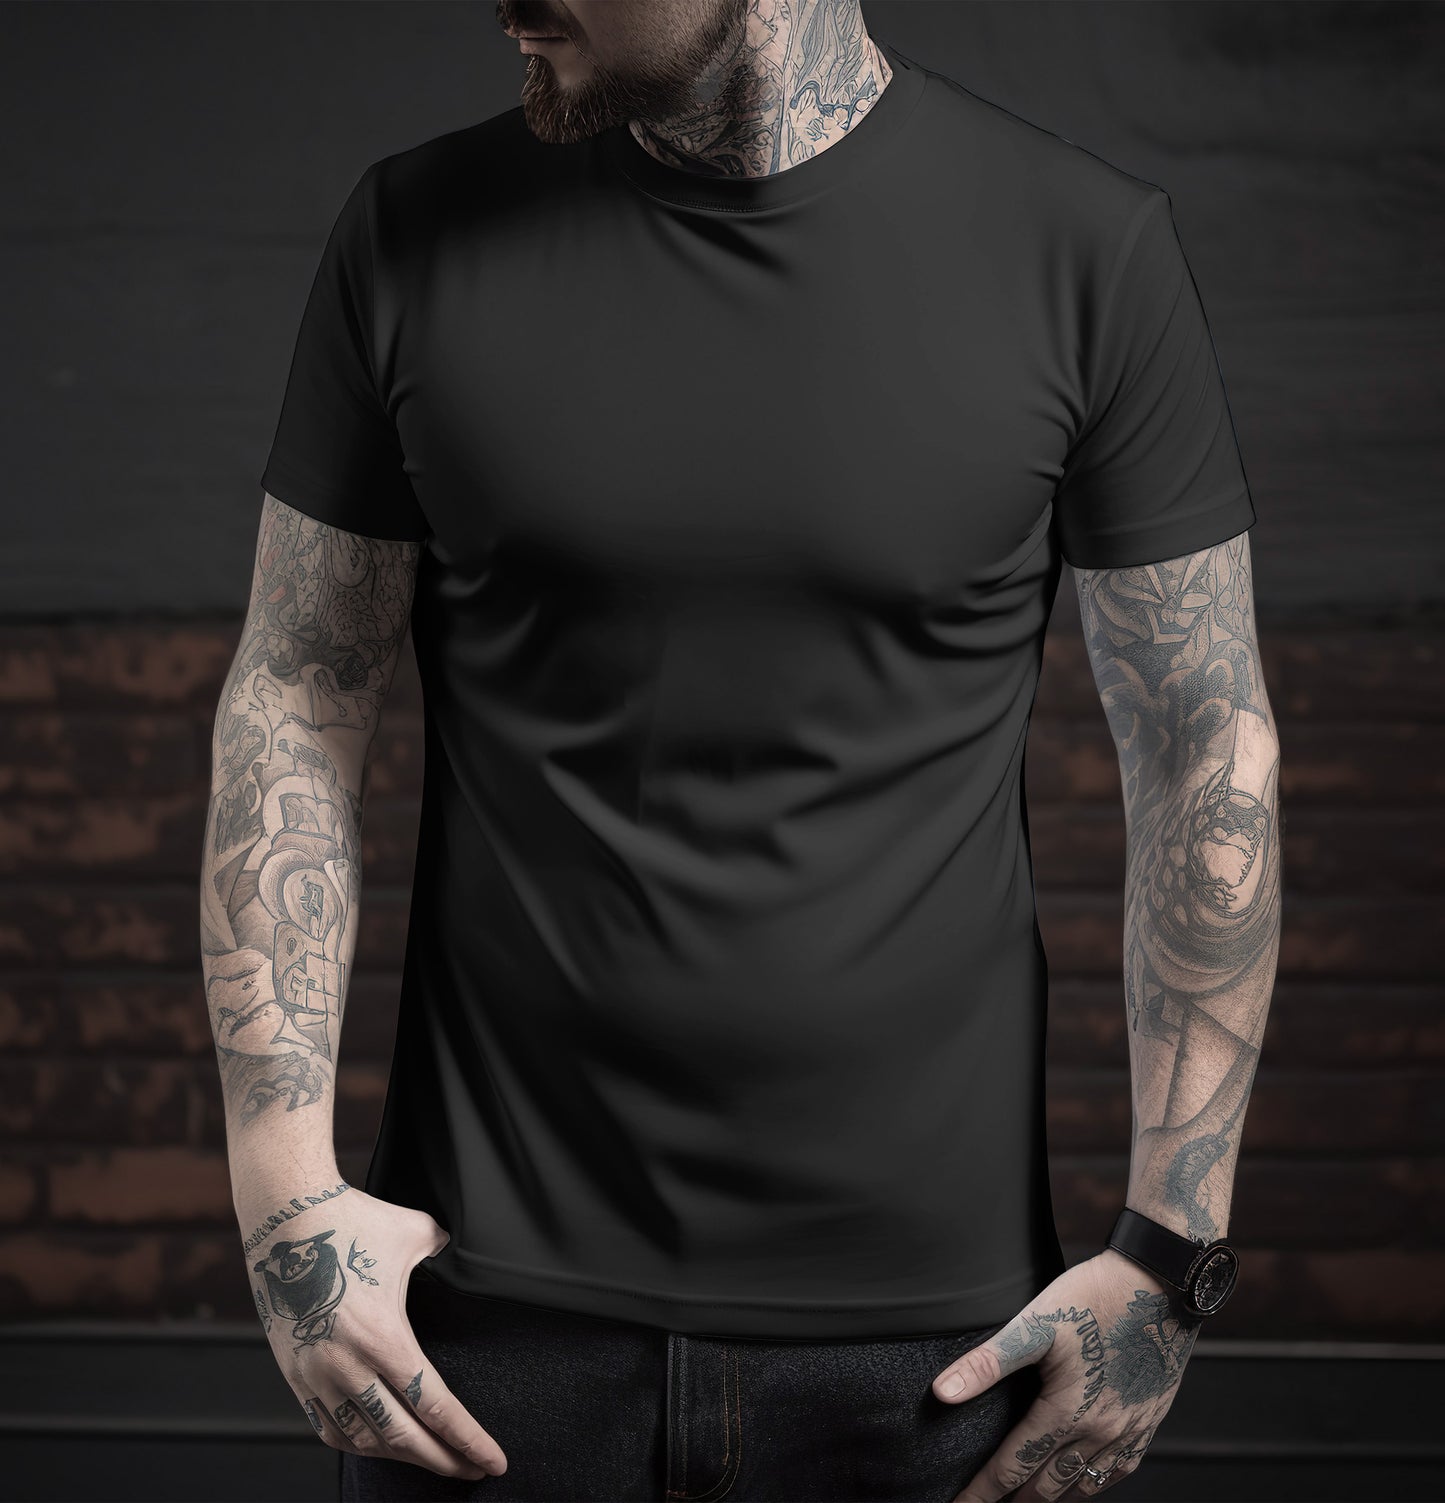 Unisex Black Color Round Neck Premium Bio-Wash T-shirt Regular Fit